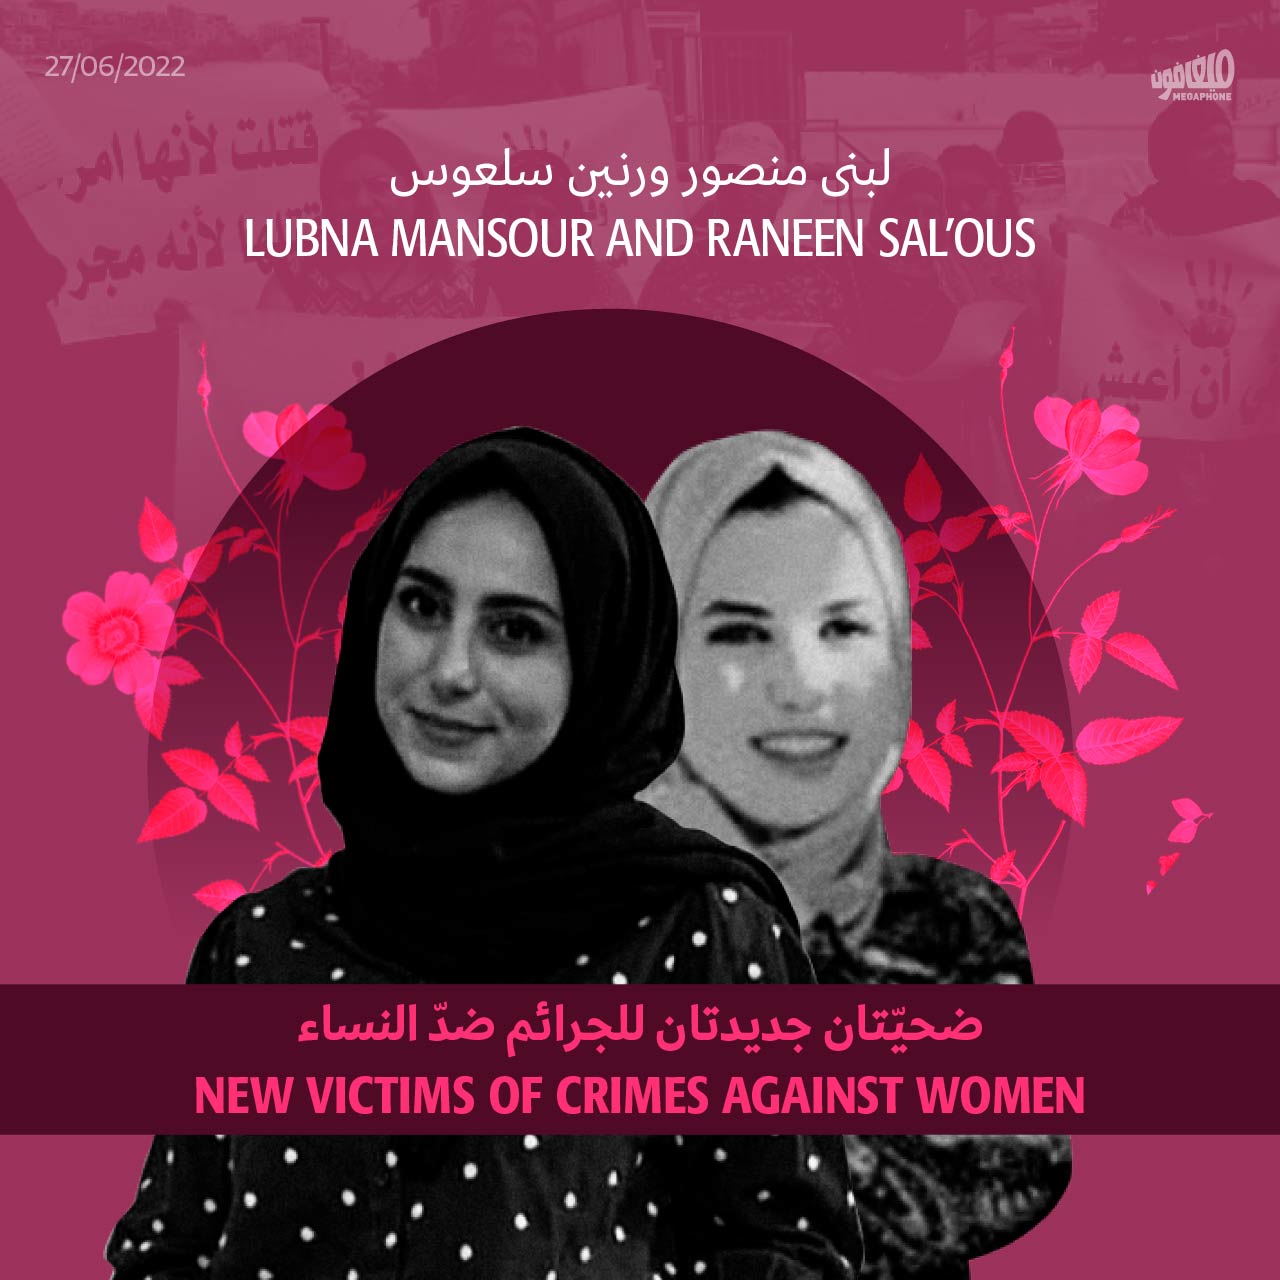 لبنى منصور ورنين سلعوس: ضحيّتان جديدتان للجرائم ضدّ النساء 